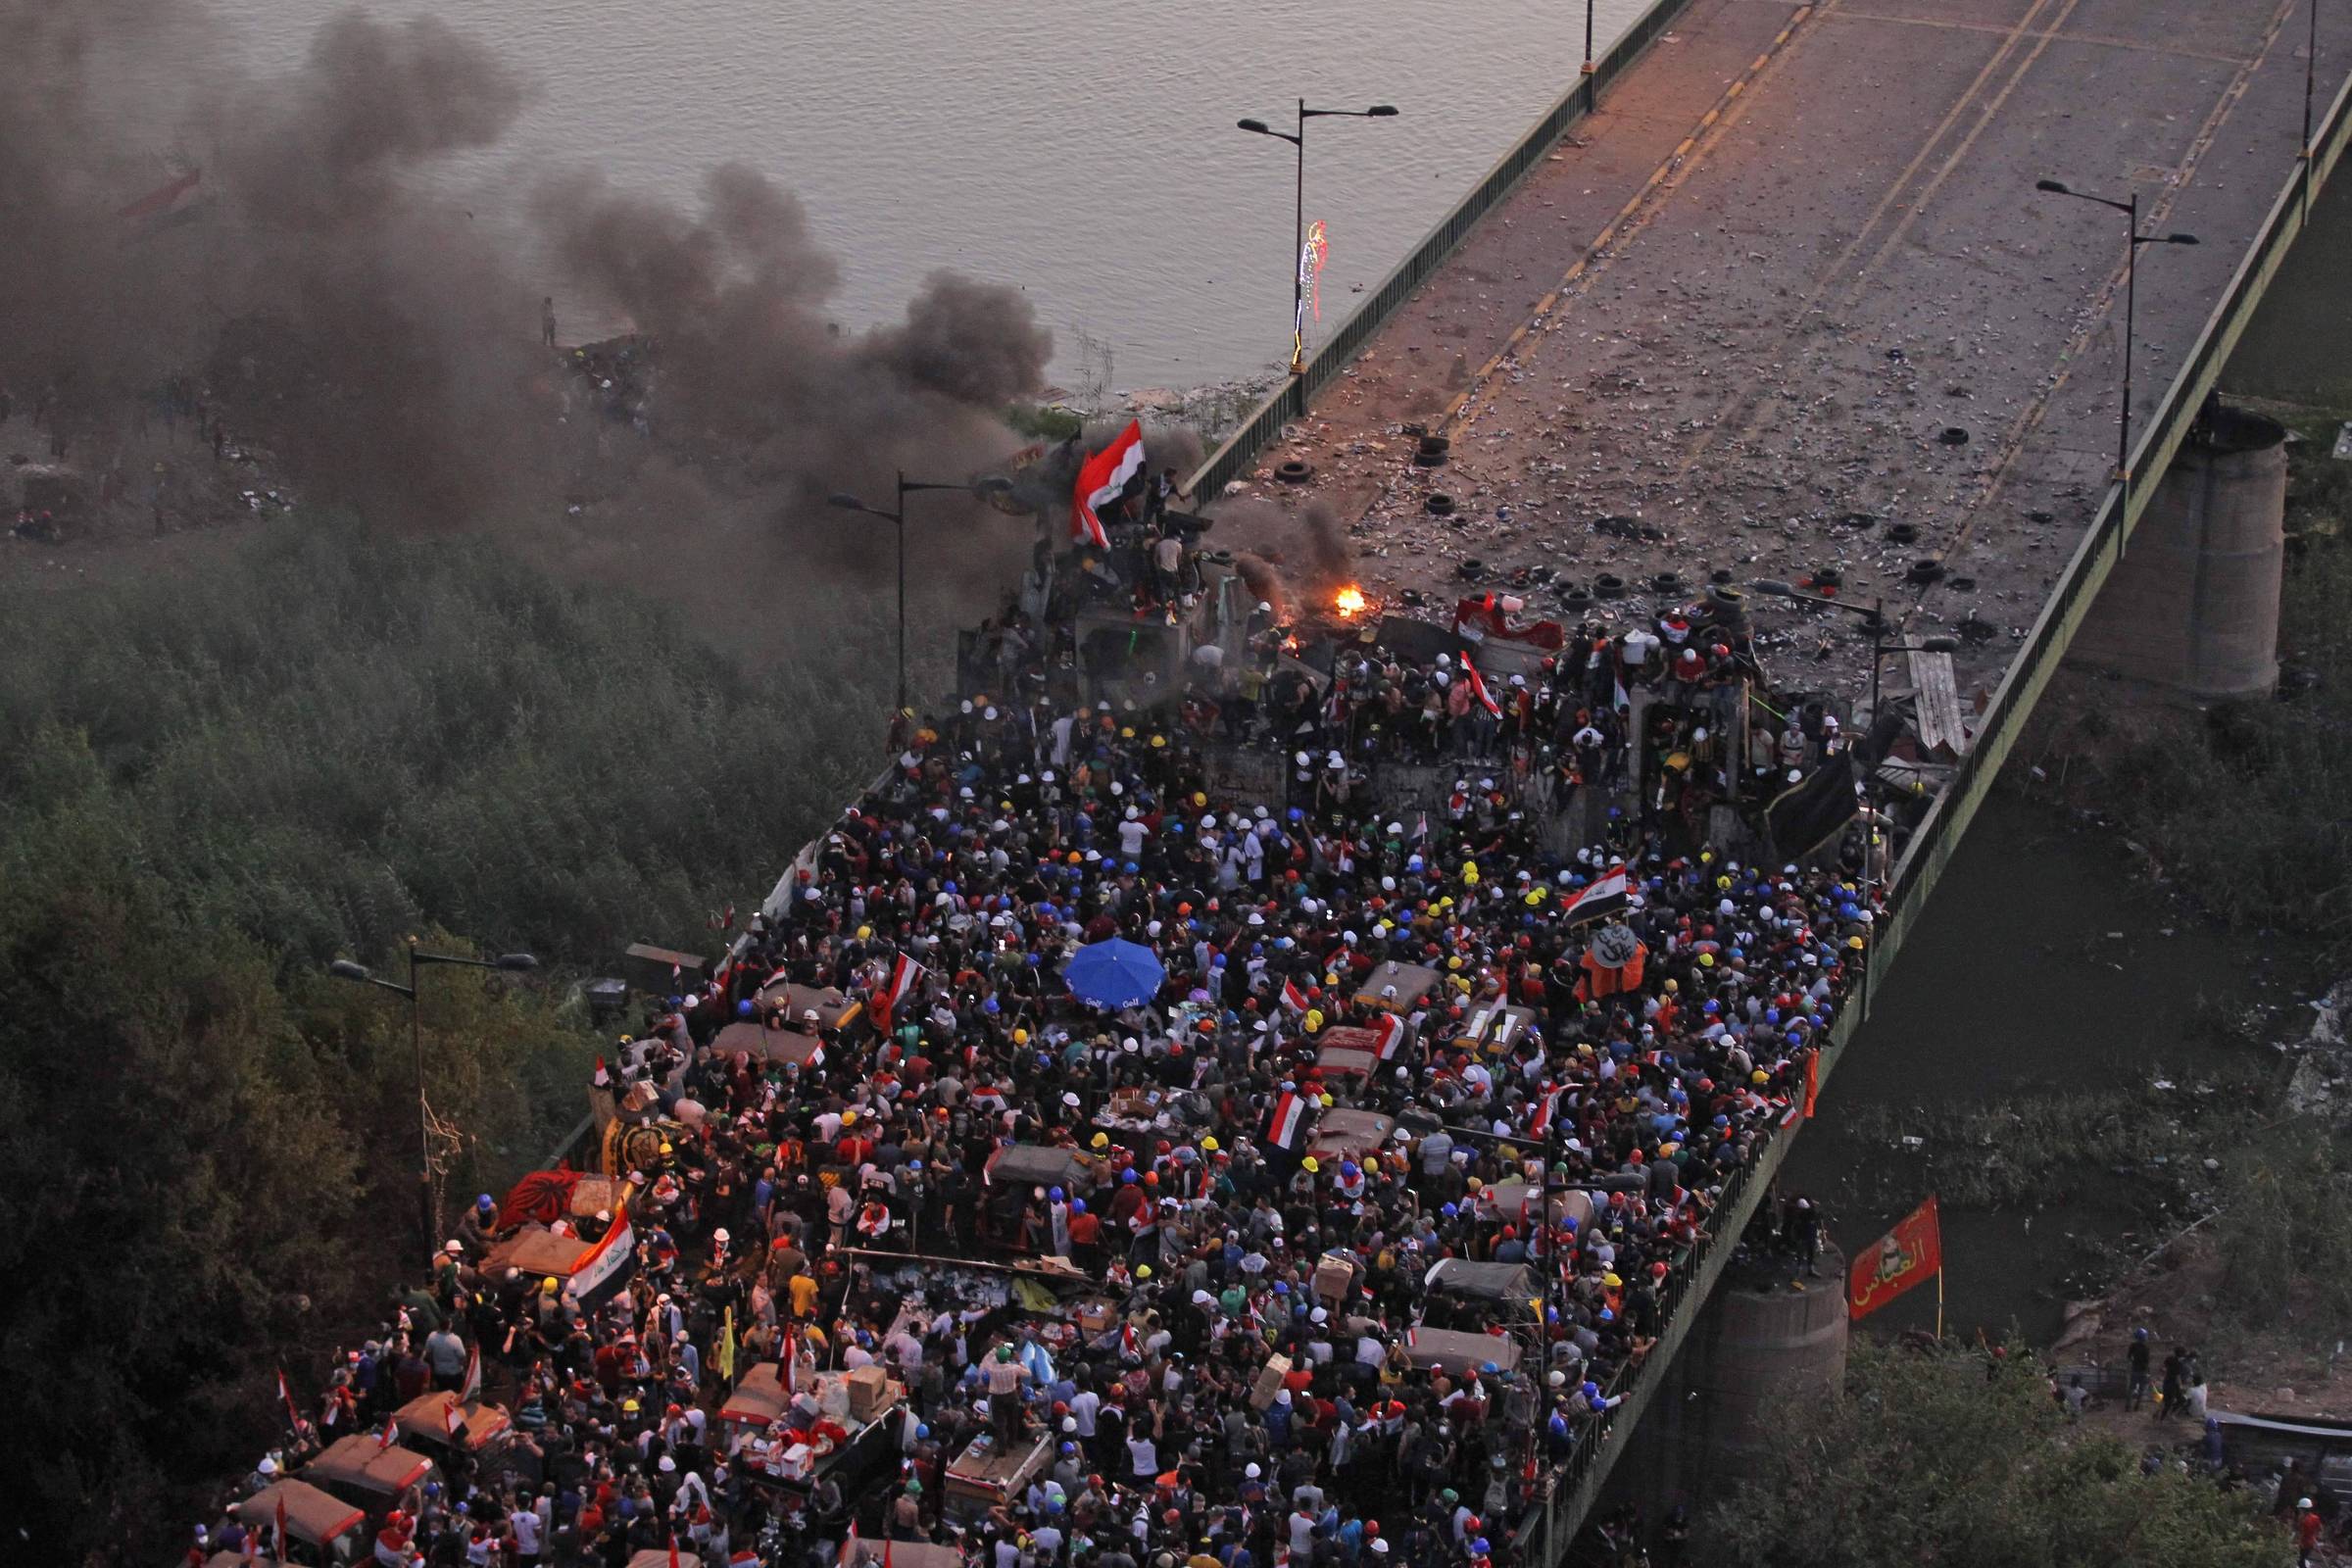 متظاهرون عراقيون